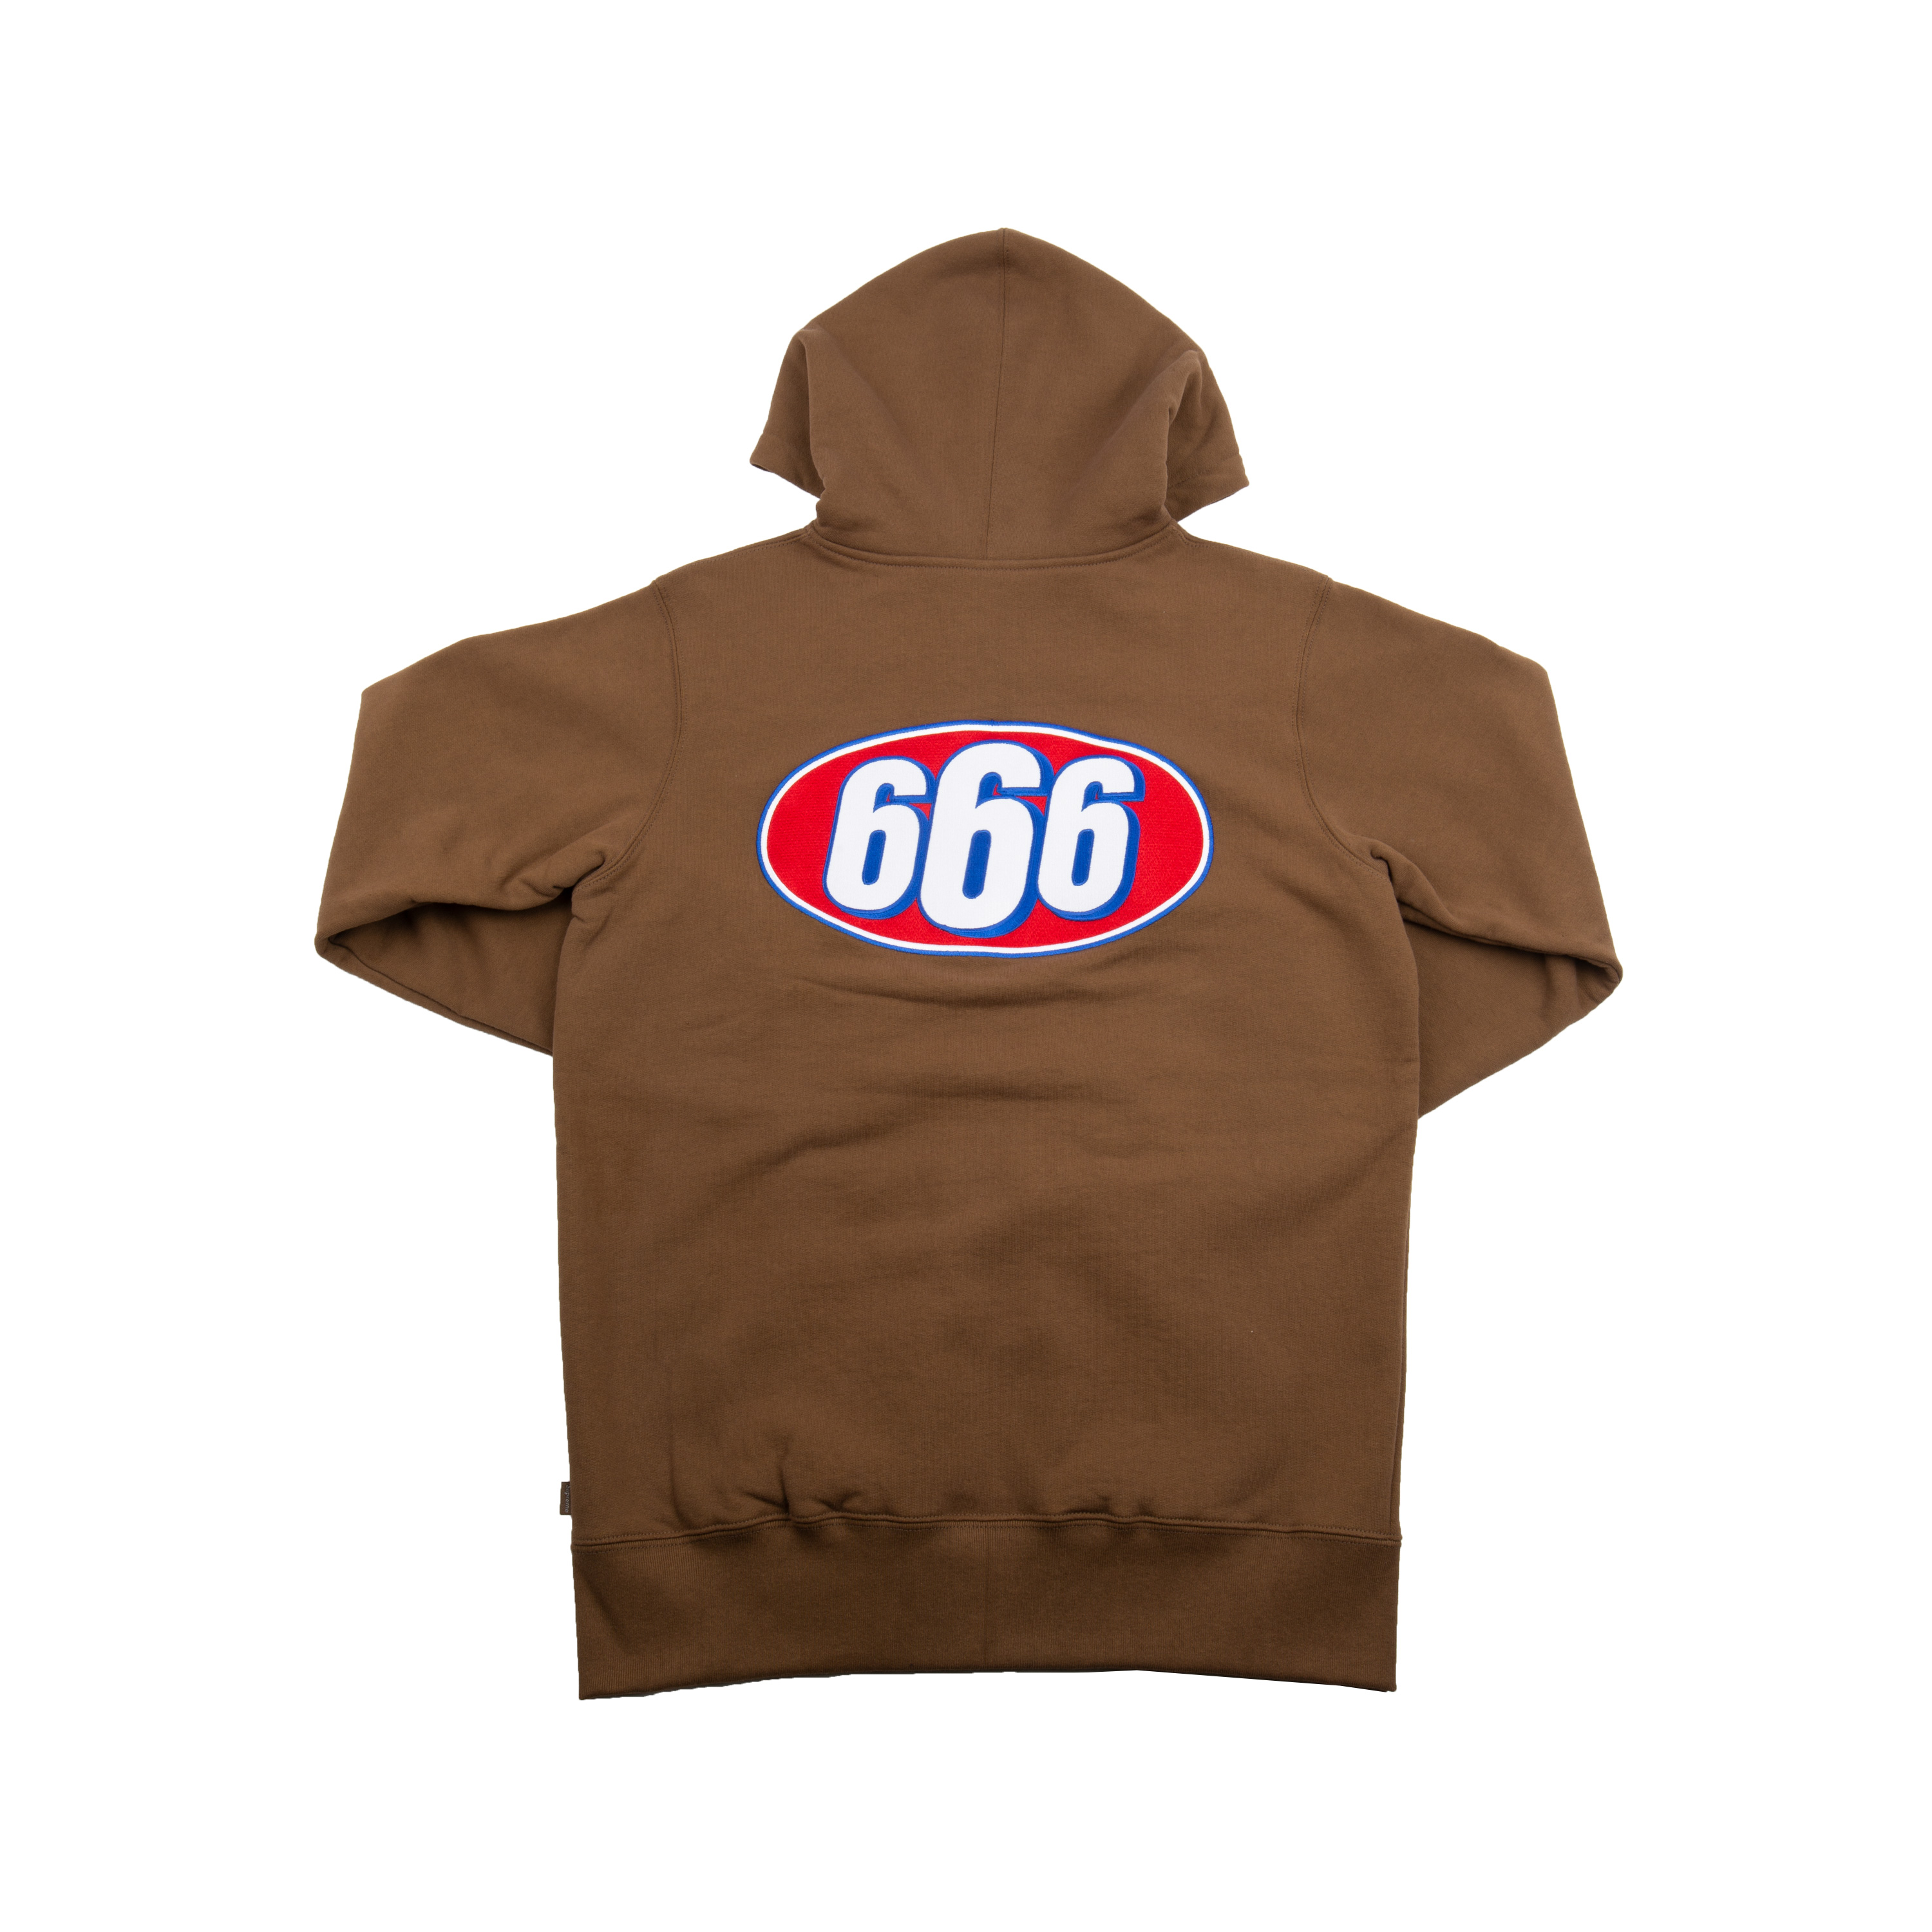 supreme 666 zip up hoodie